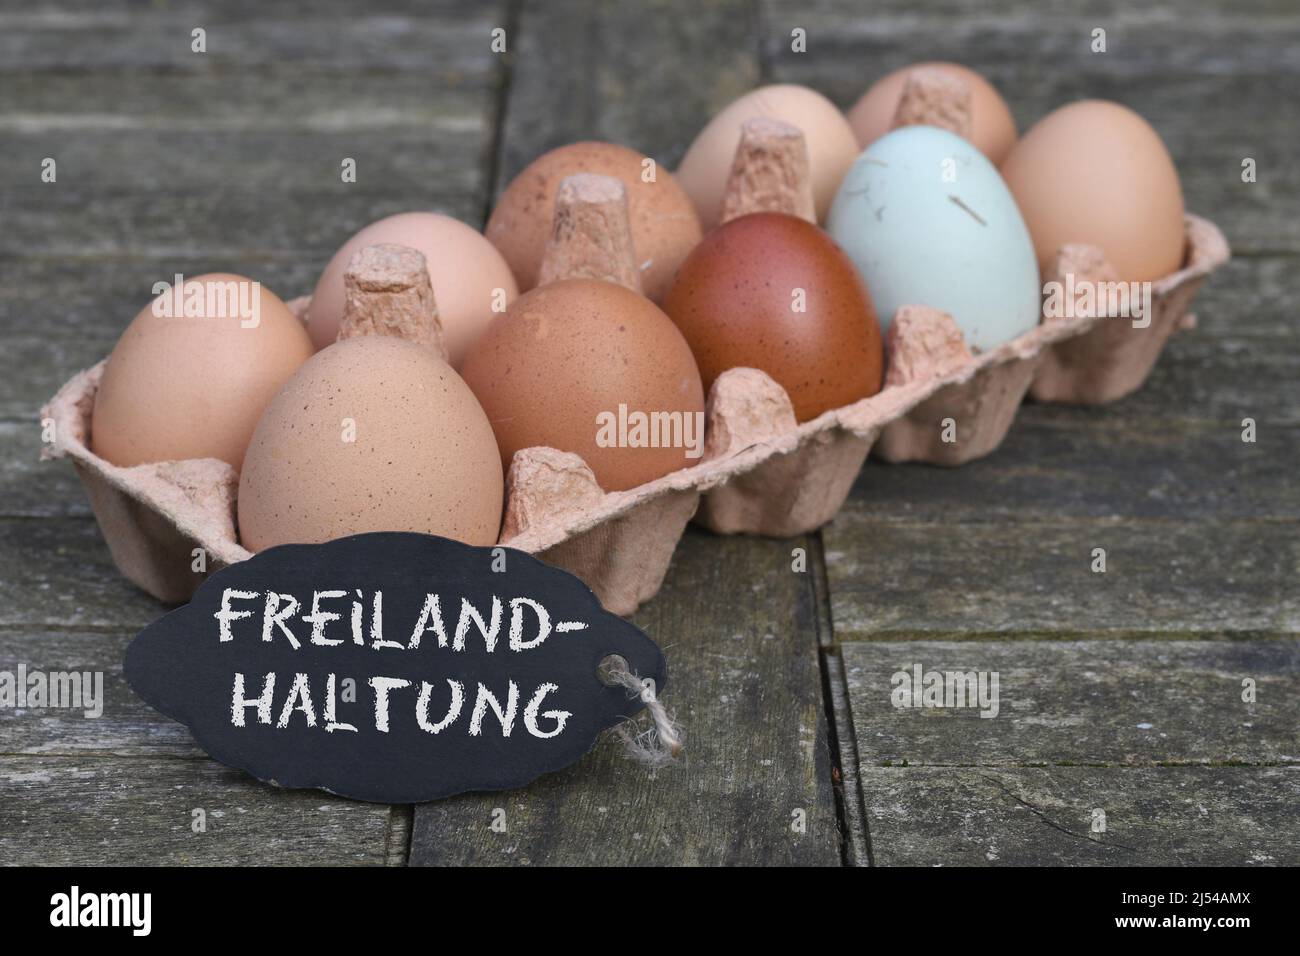 Pizarra con la inscripción 'Freilandhaltung' delante de los huevos de pollo en la caja de huevos, Alemania Foto de stock